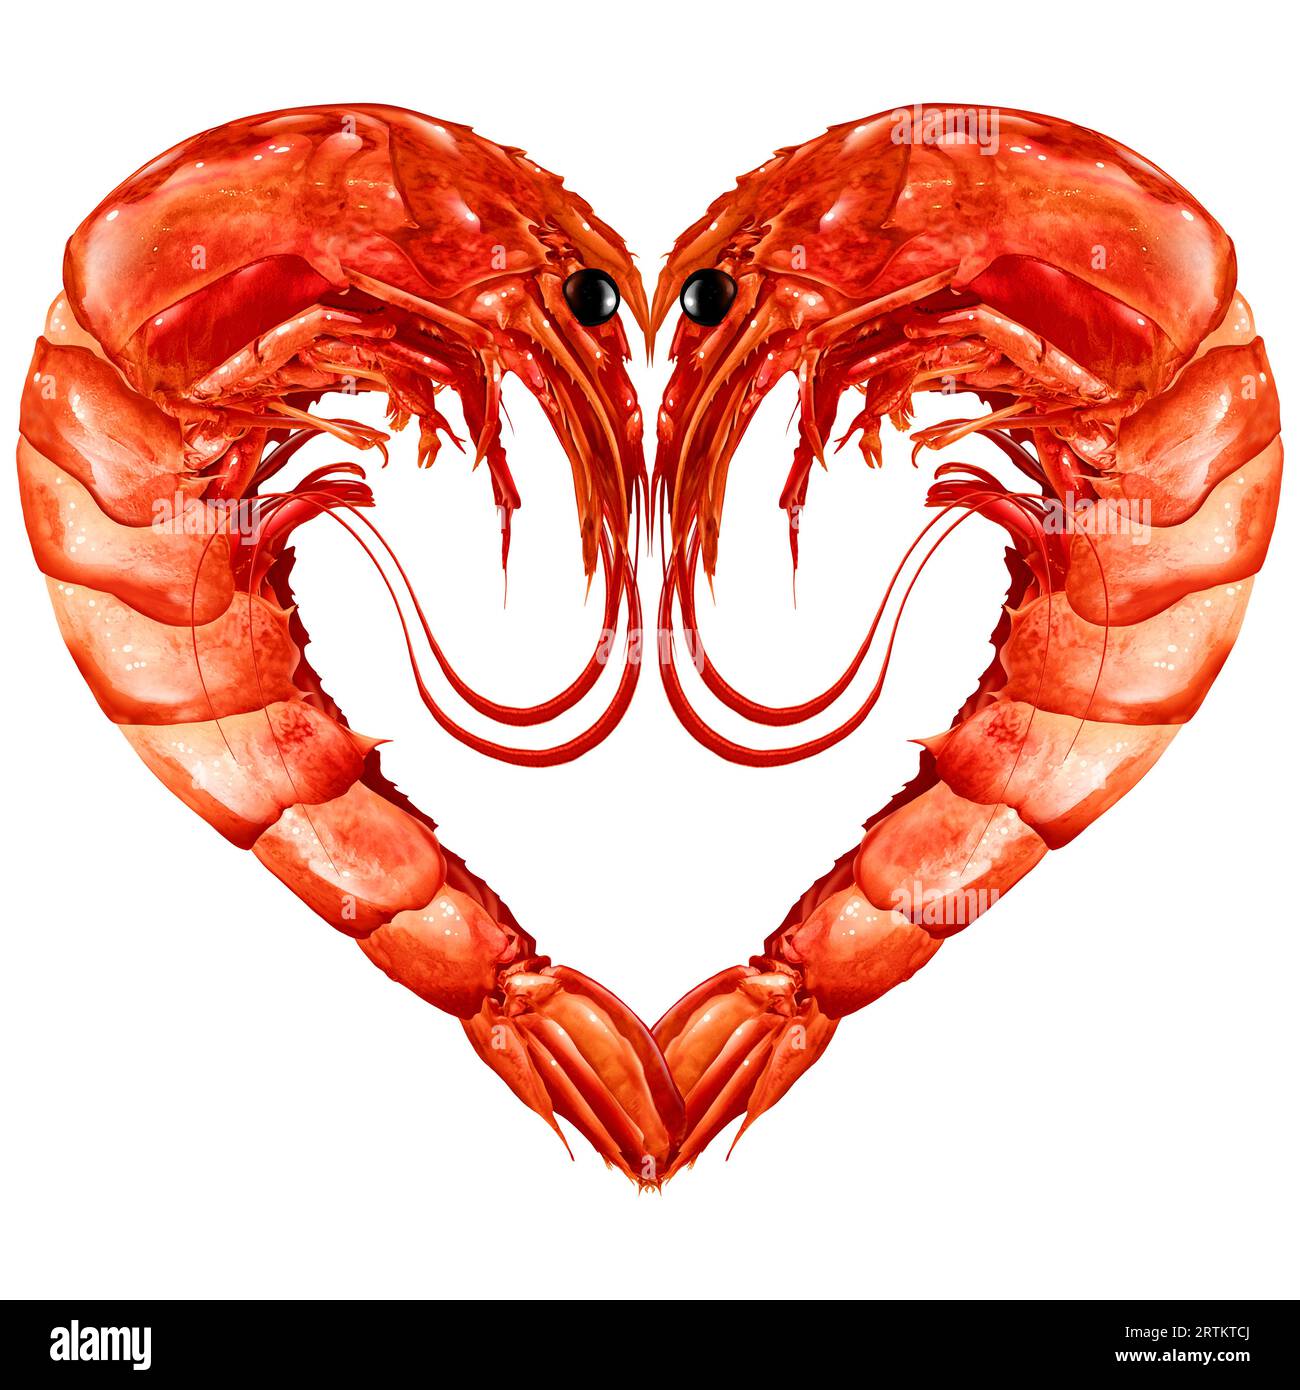 Simbolo del cuore d'amore dei gamberi isolato su uno sfondo bianco che rappresenta crostacei di gamberi rossi e pesce di gambero che cucinano come gamberetti o pesca Foto Stock